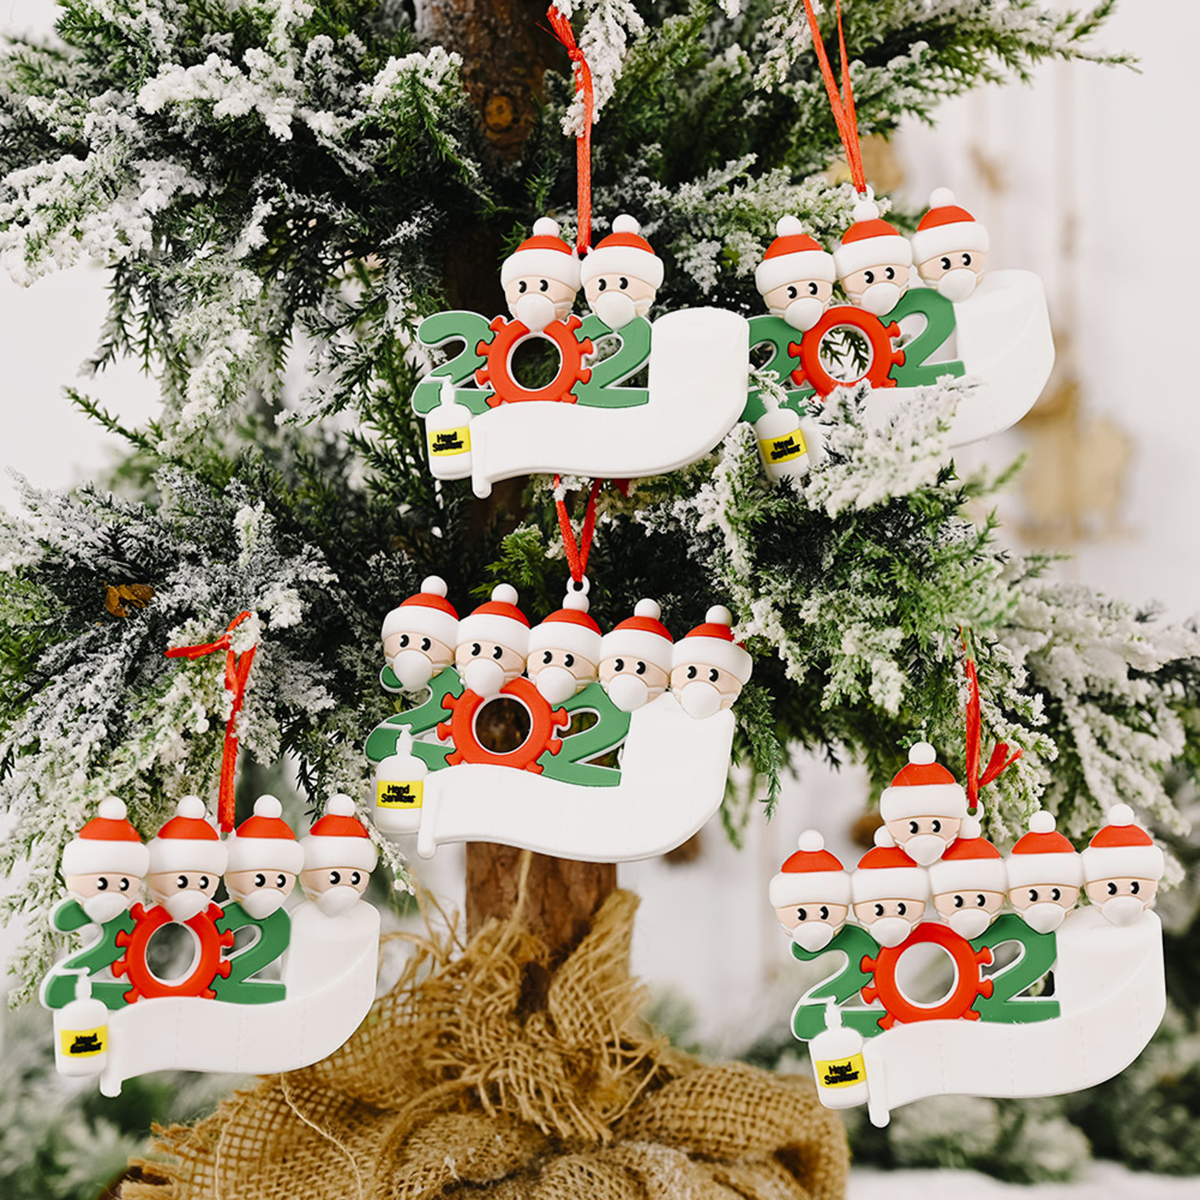 Mask-Santa-Snowman-Ornament-DIY-Name-Greetings-Christmas-Tree-Ornament-for-Christmas-Tree-Decoration-1786417-9